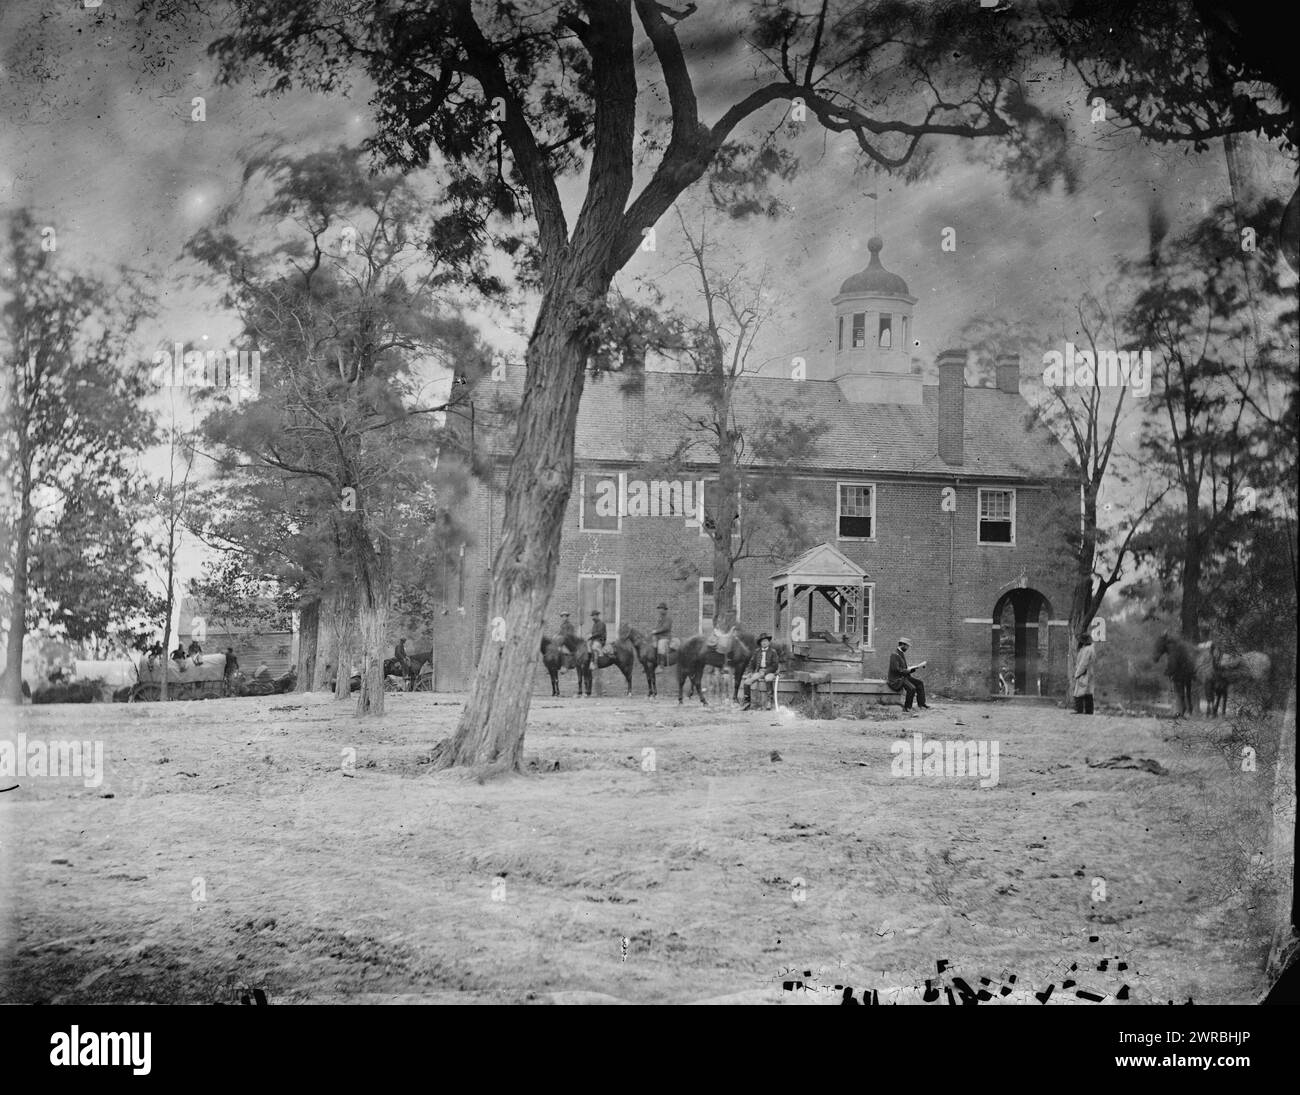 Fairfax Court House, Va. El juzgado, fotografía del principal teatro oriental de la guerra, Gettysburg, junio-julio de 1863. La campaña de Gettysburg comenzó en Virginia. El ejército de Lee se movía hacia el norte. El ejército de la Unión Hooker mantuvo el ritmo de Lee, manteniendo una posición entre los Confederados y Washington. Los caballeros de esta fotografía eran parte de la fuerza de la Unión. La campaña llegó a su punto culminante con la Batalla de Gettysburg, del 1 al 3 de julio, O'Sullivan, Timothy H., 1840-1882, fotógrafo, 1863 junio., Estados Unidos, Historia, Guerra civil, 1861-1865, Negativos de vidrio, 1860-1870, Estéreo, 1860-1870 Foto de stock